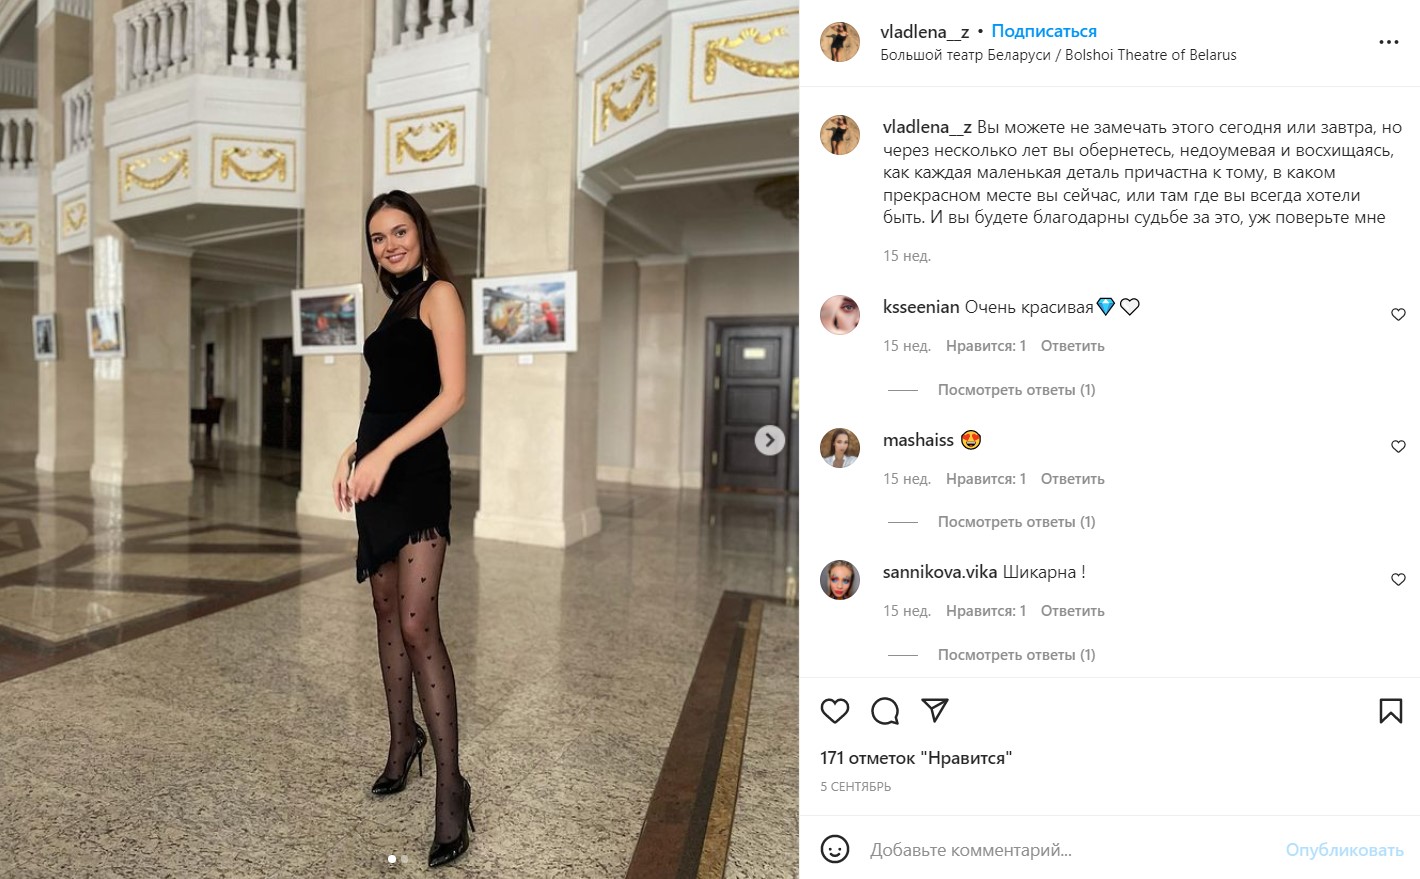 Партнершей Лукашенко на балу была таможенница из "Мисс Беларусь"